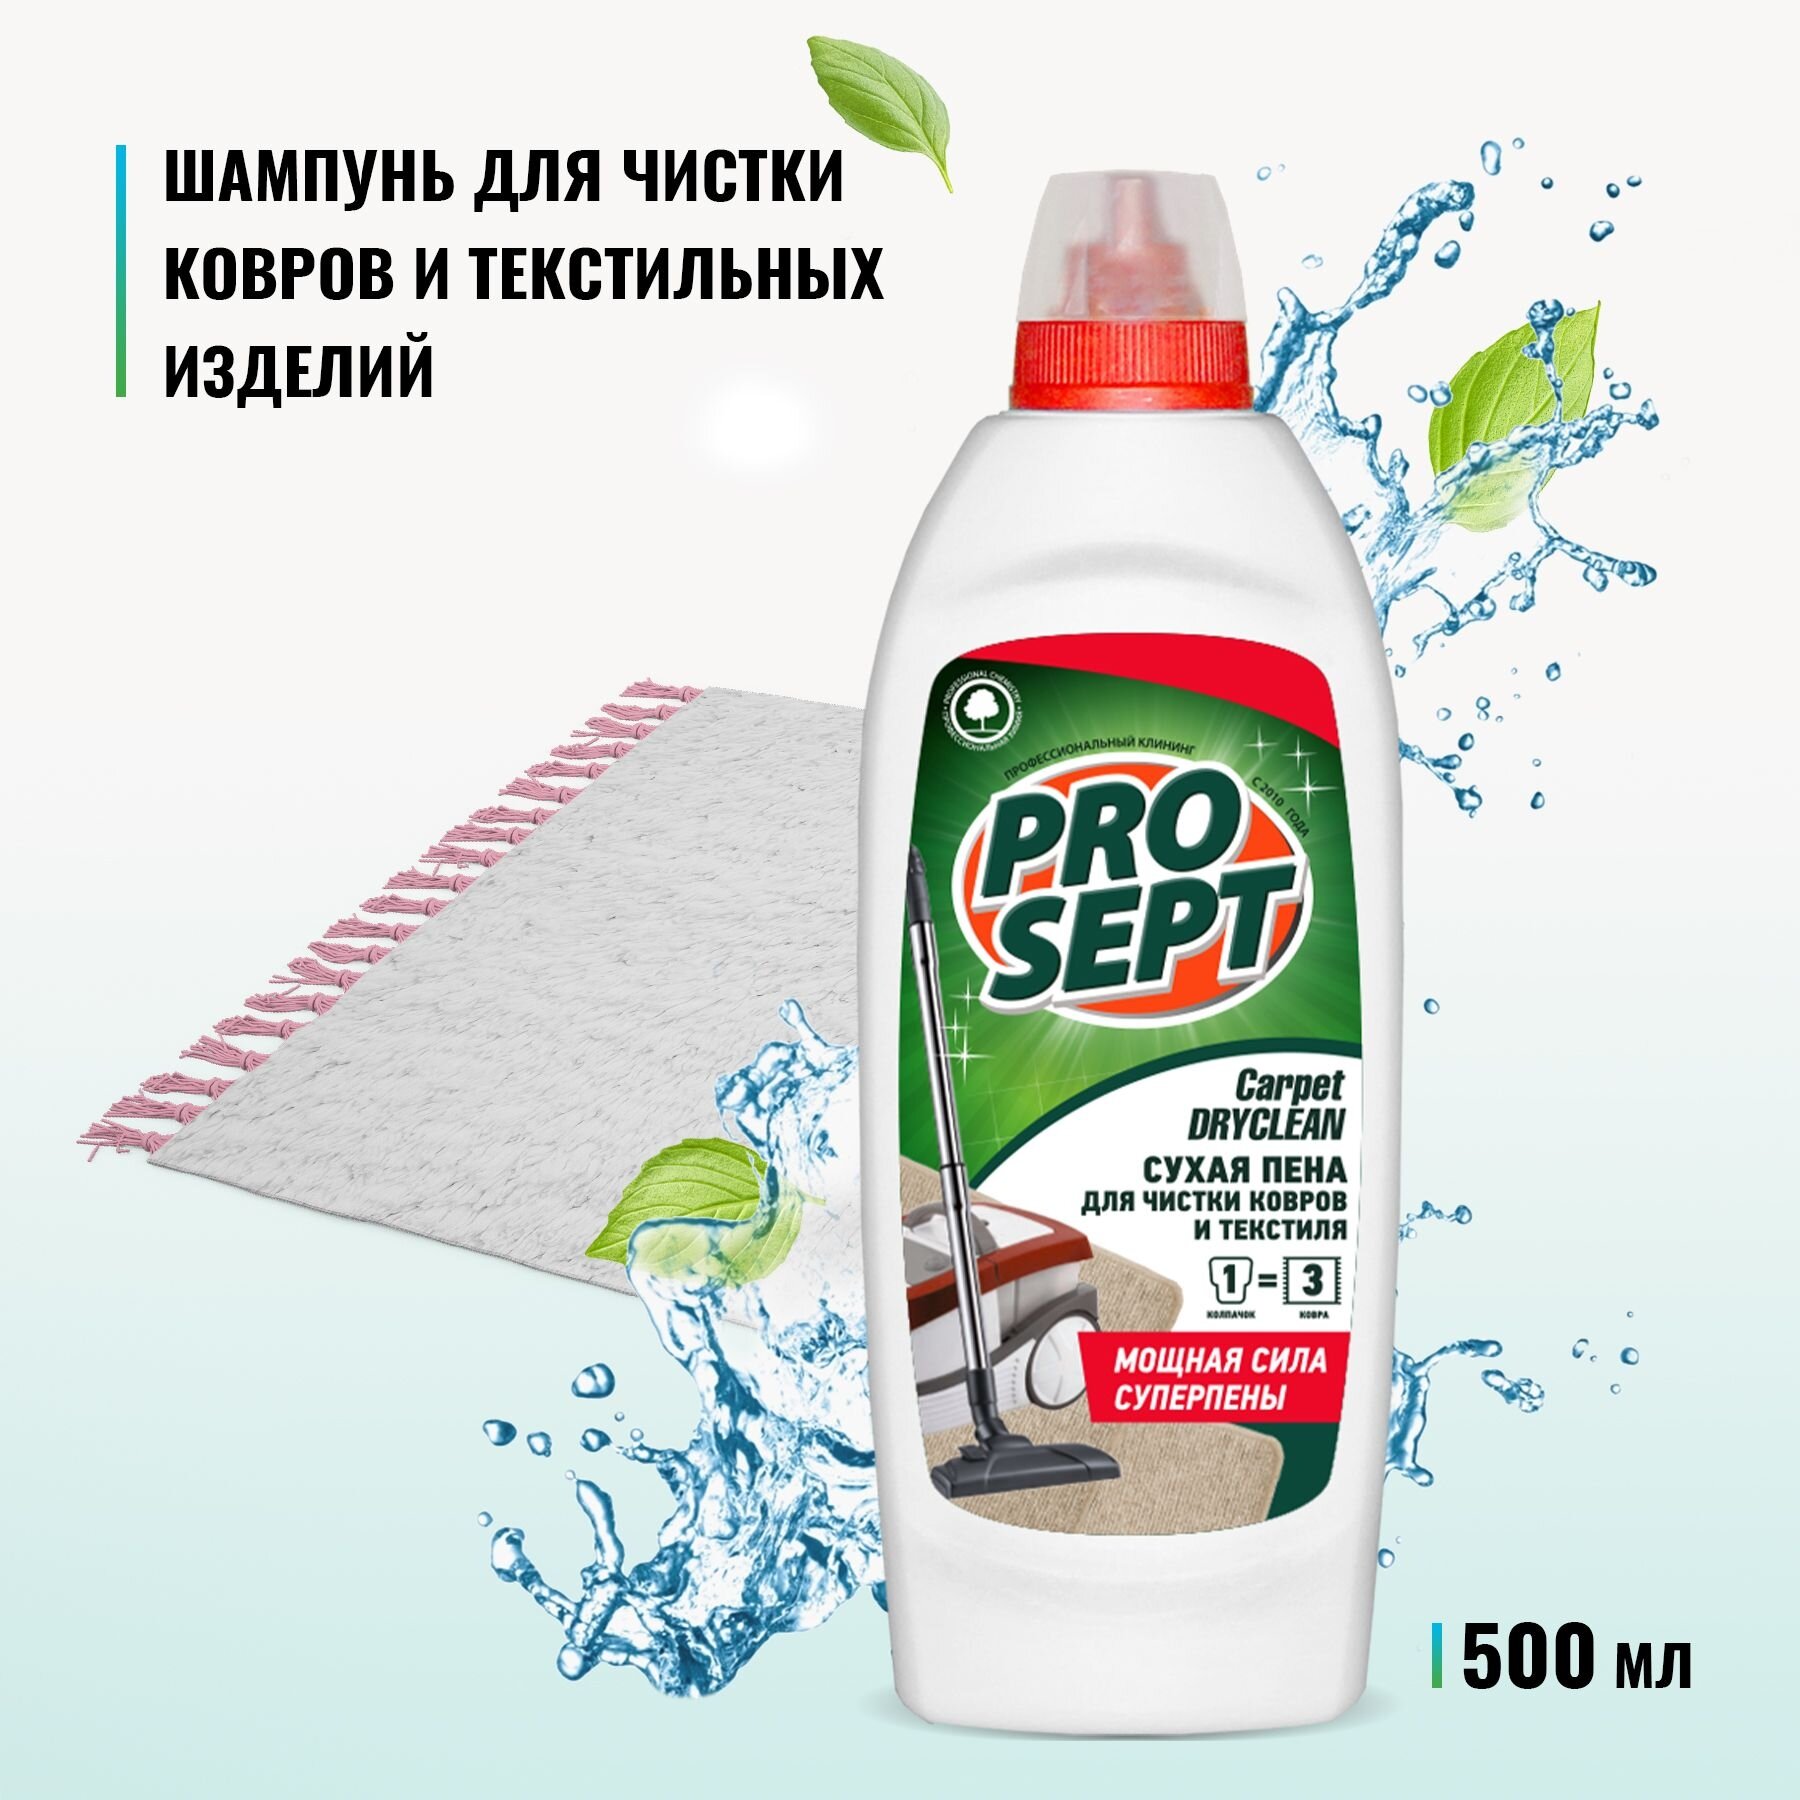 Prosept Carpet DryClean Шампунь для сухой чистки ковров и текстильных изделий, 500 мл